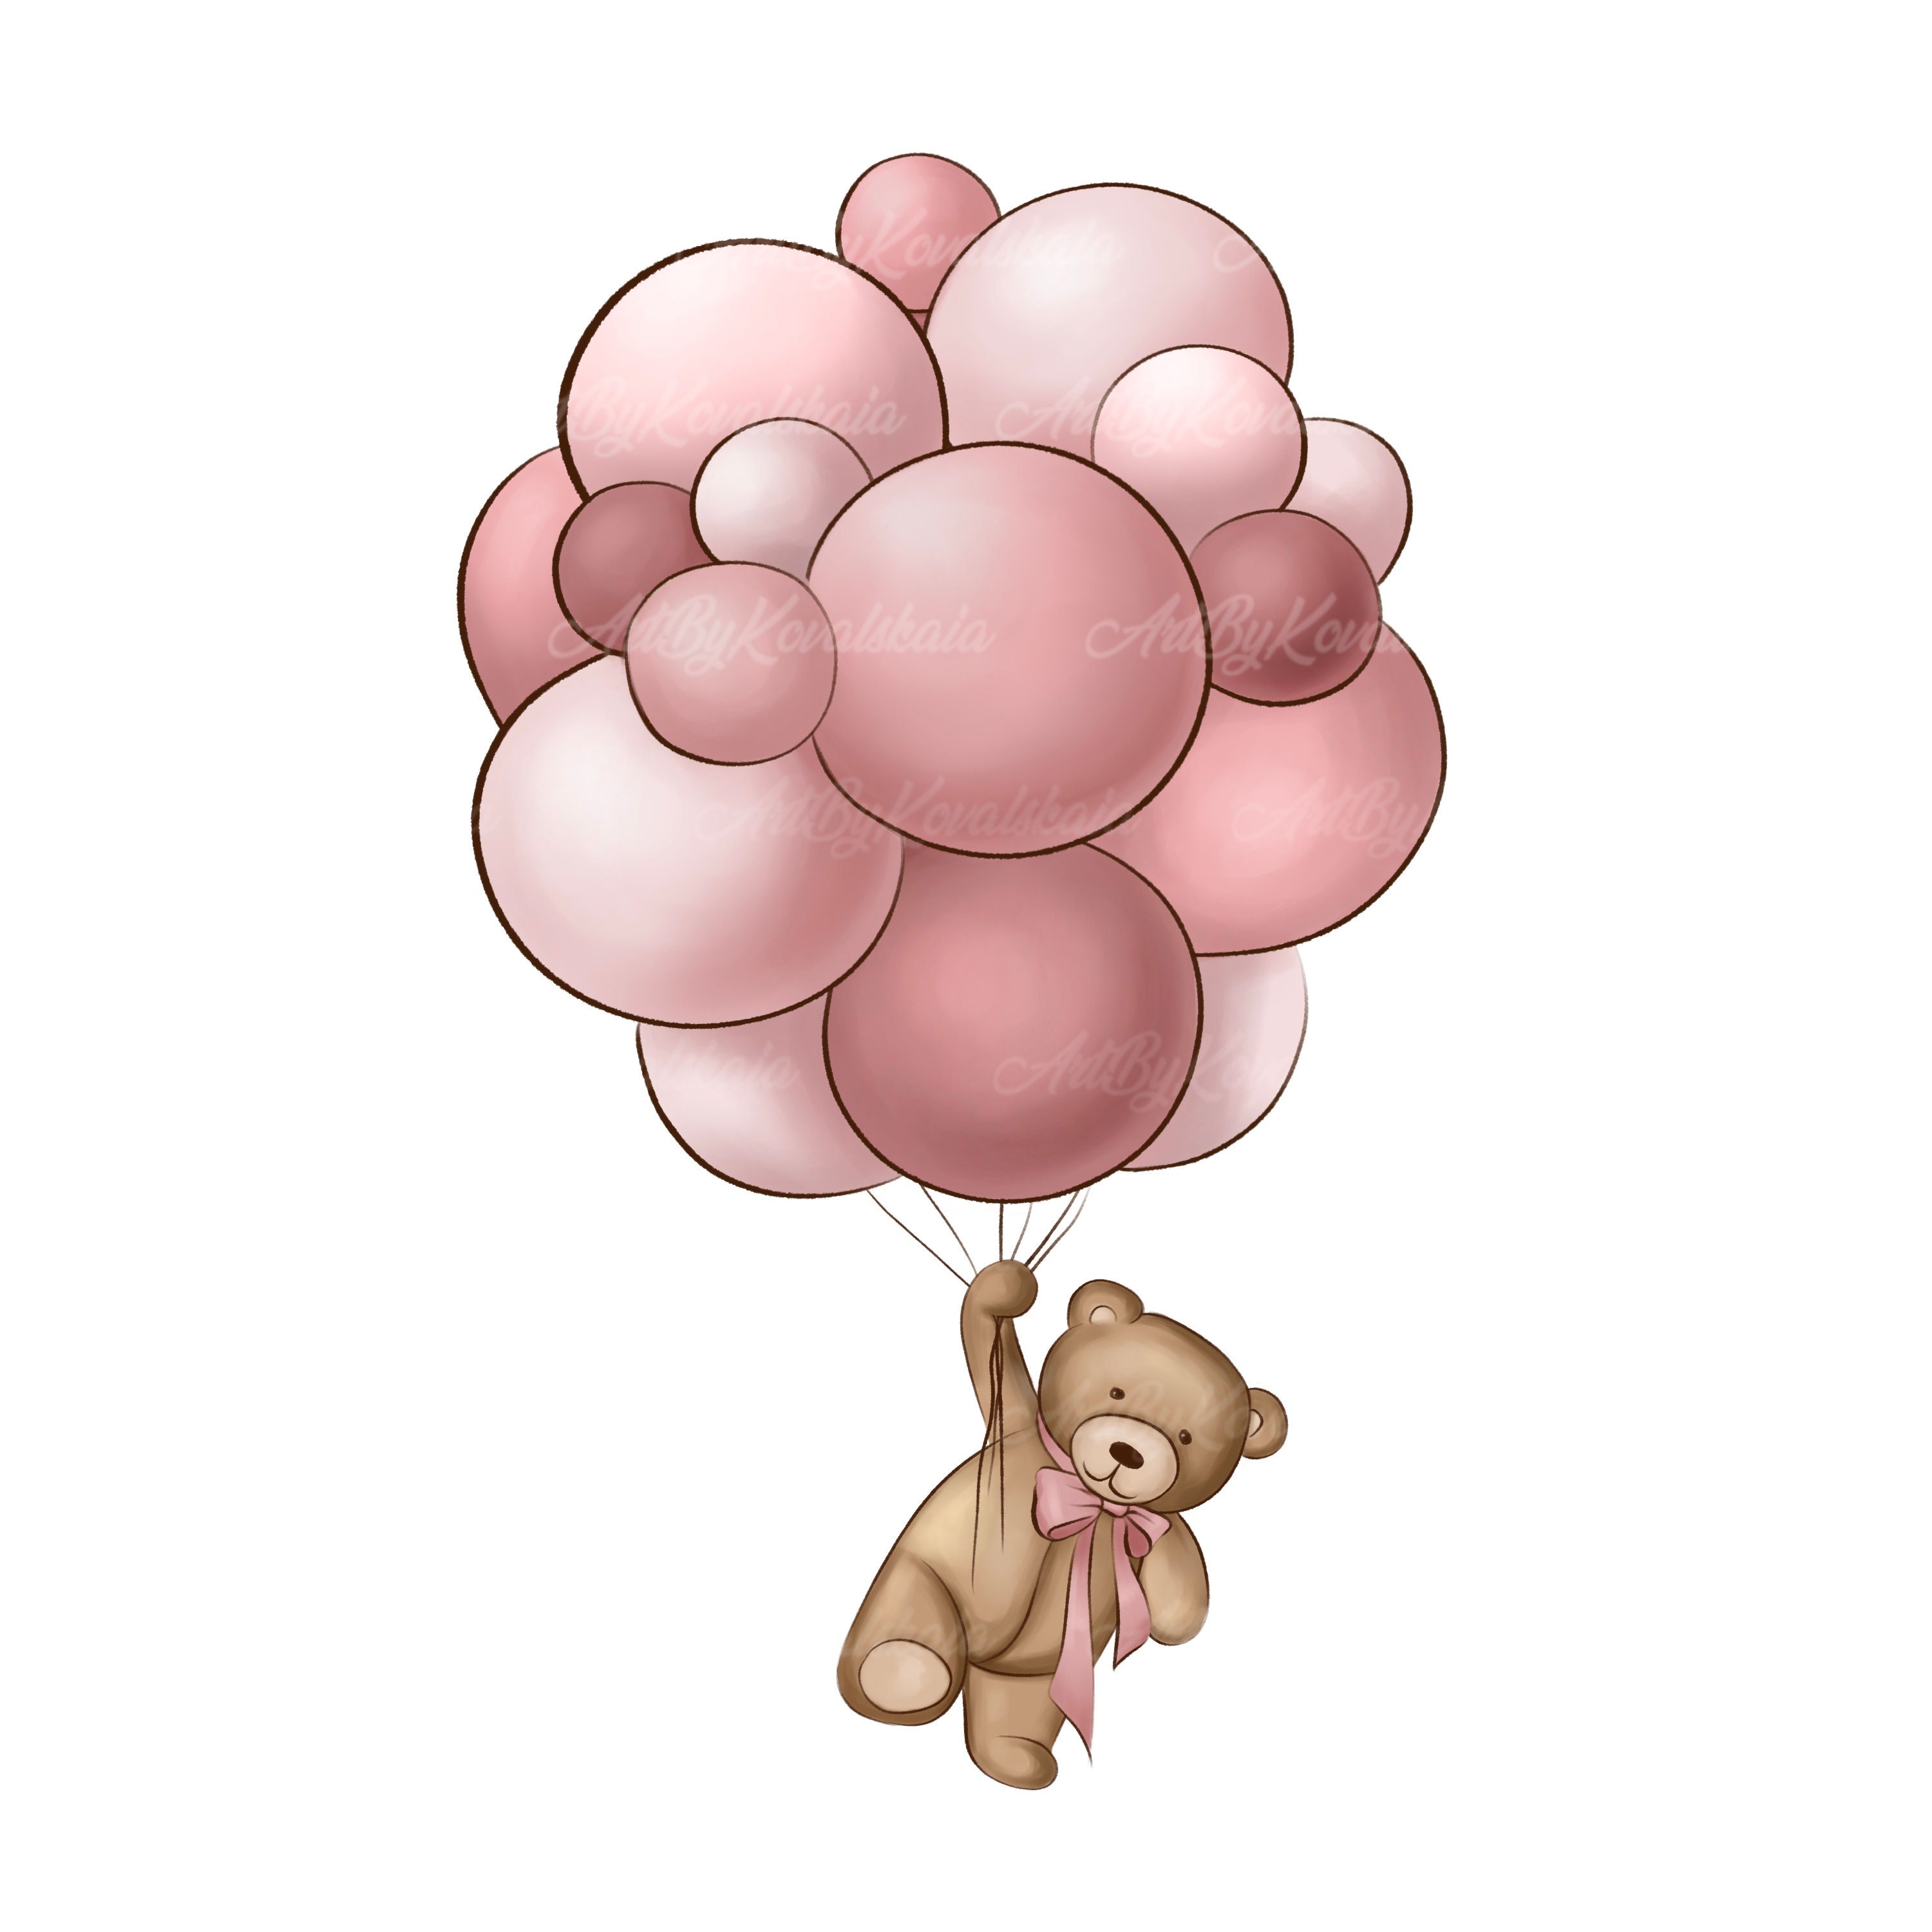 3000px x 3000px - Teddy Bear With Balloons Teddy Bear Clipart Teddy Bear PNG - Etsy